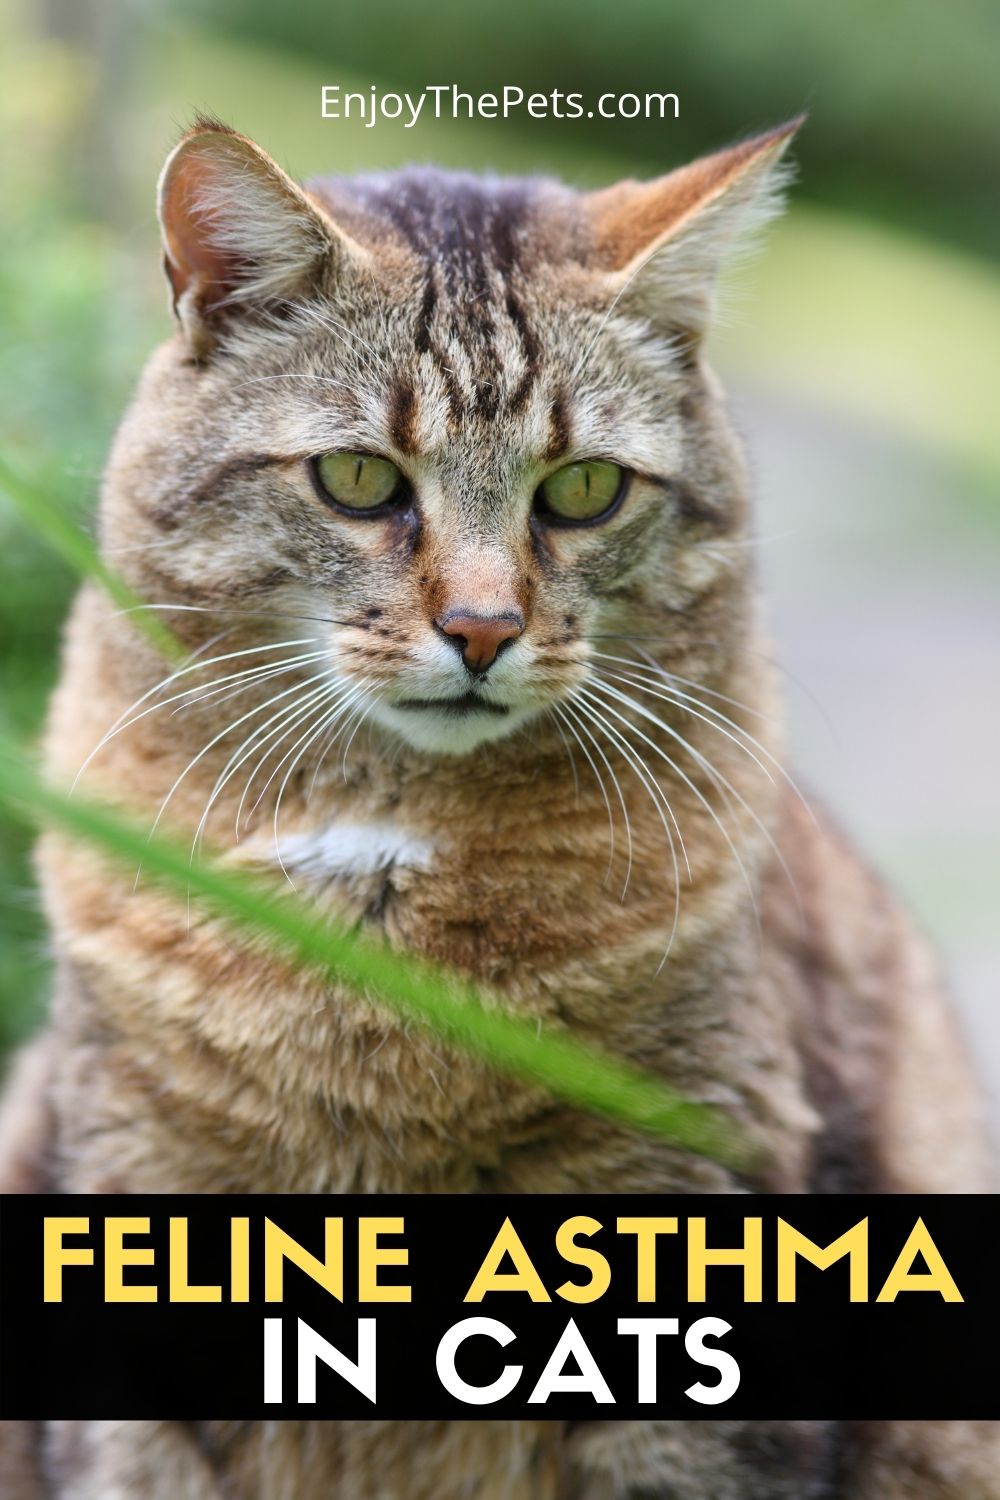 FELINE ASTHMA IN CATS